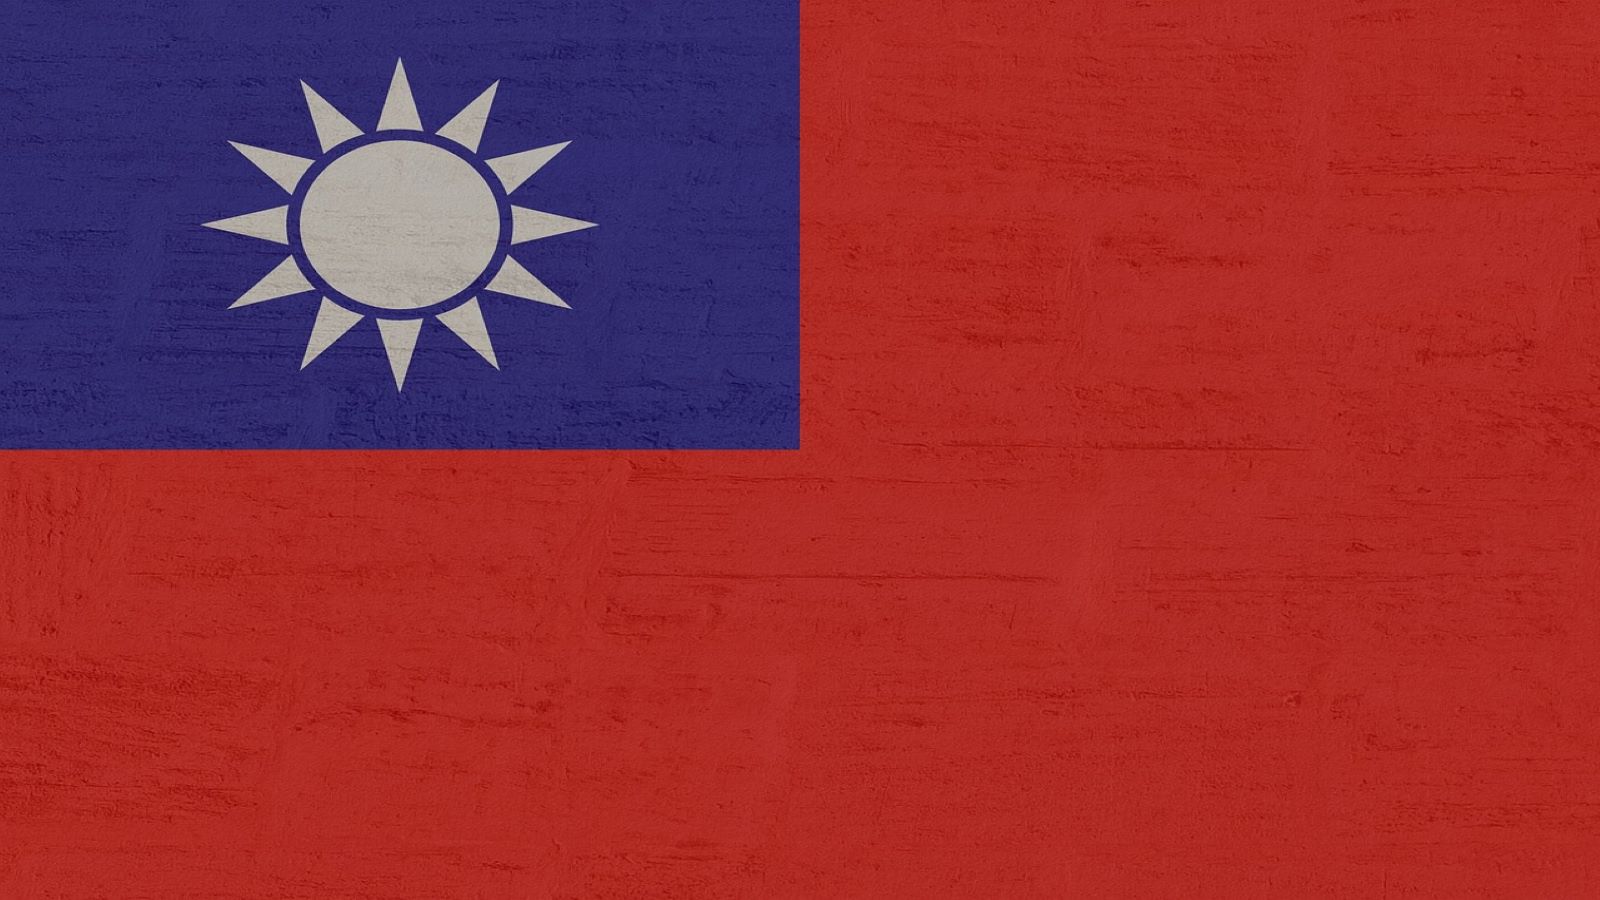 China may war over Taiwan